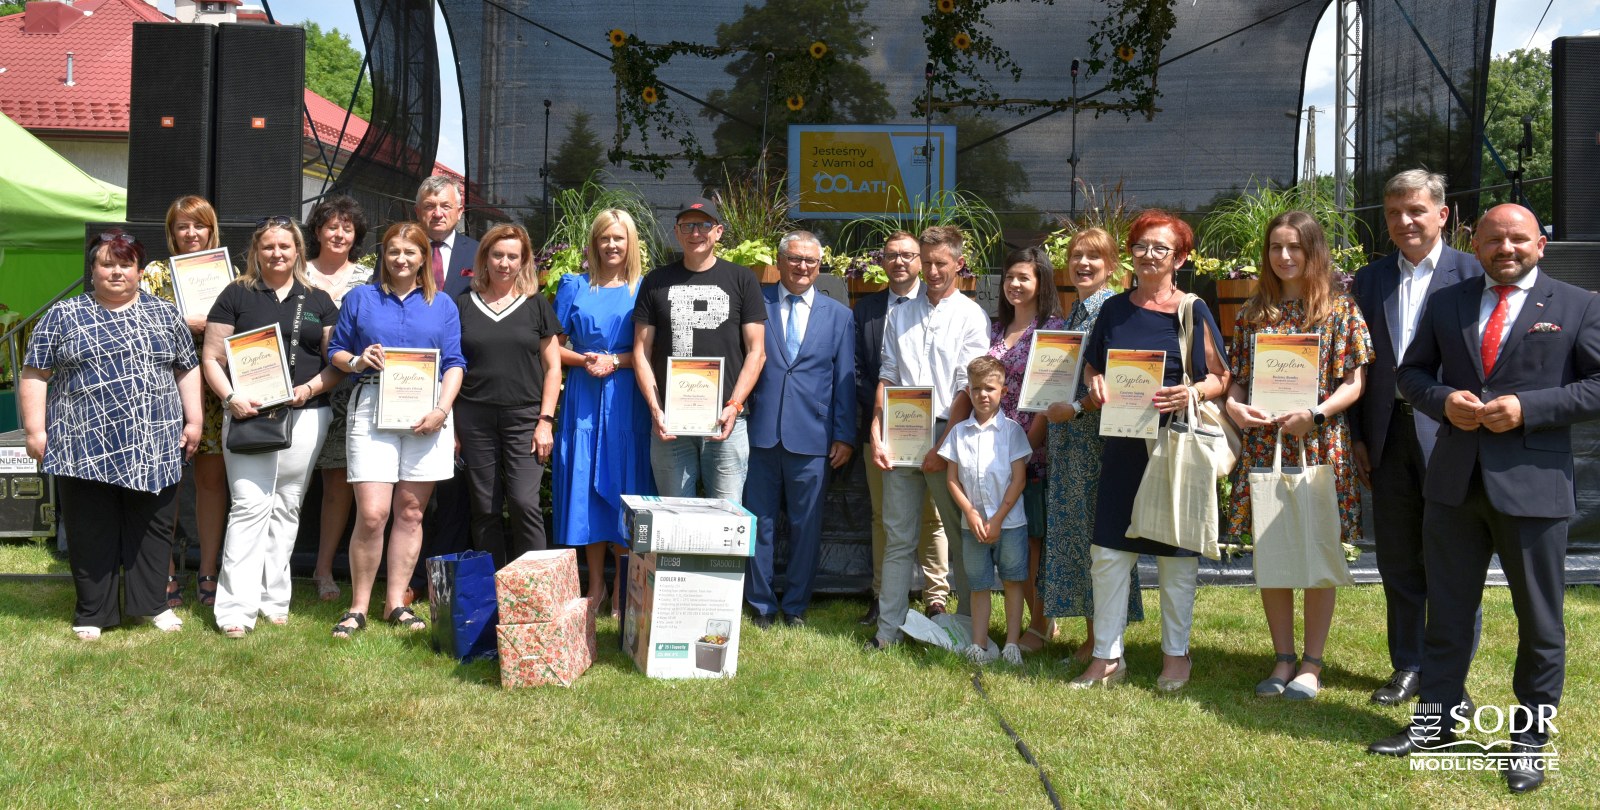 Laureaci konkursu odebrali nagrody podczas Dnia Otwartych Drzwi w Modliszewicach